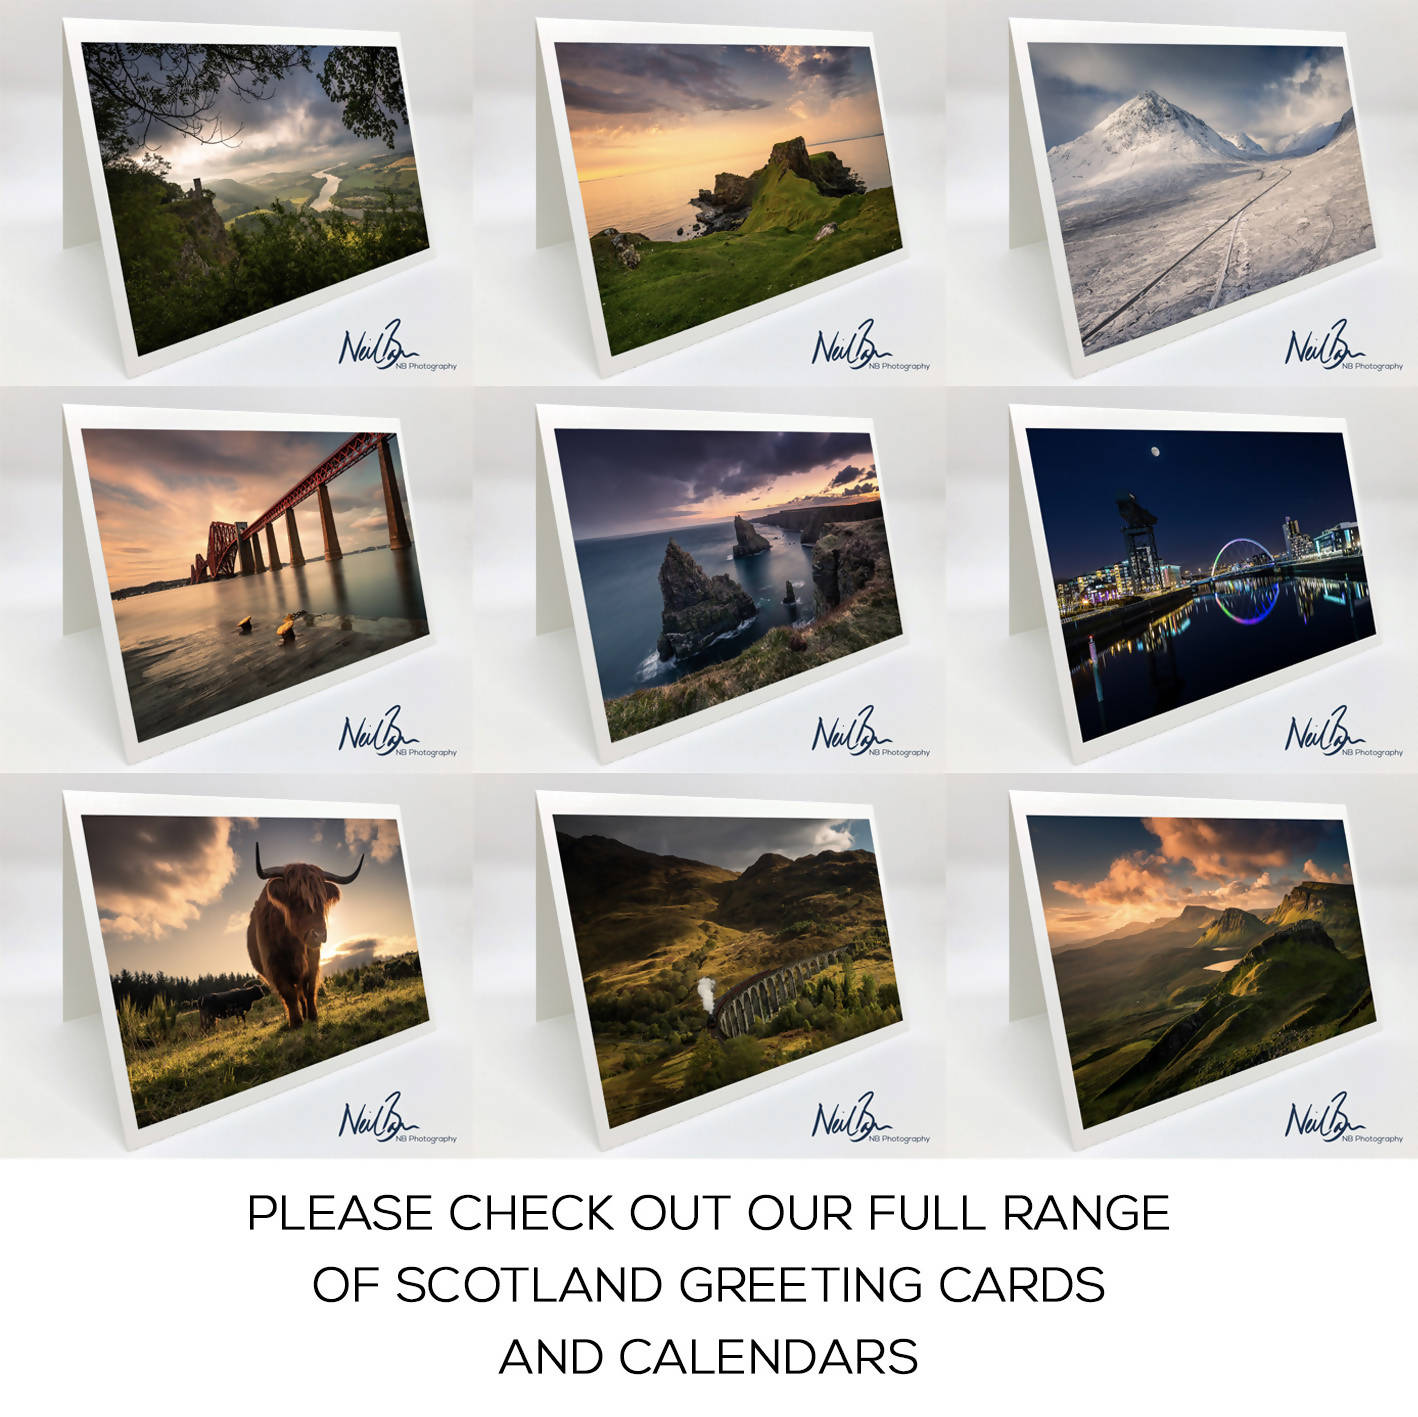 Isle of Skye Quiraing - Scotland Greeting Card - Blank Inside